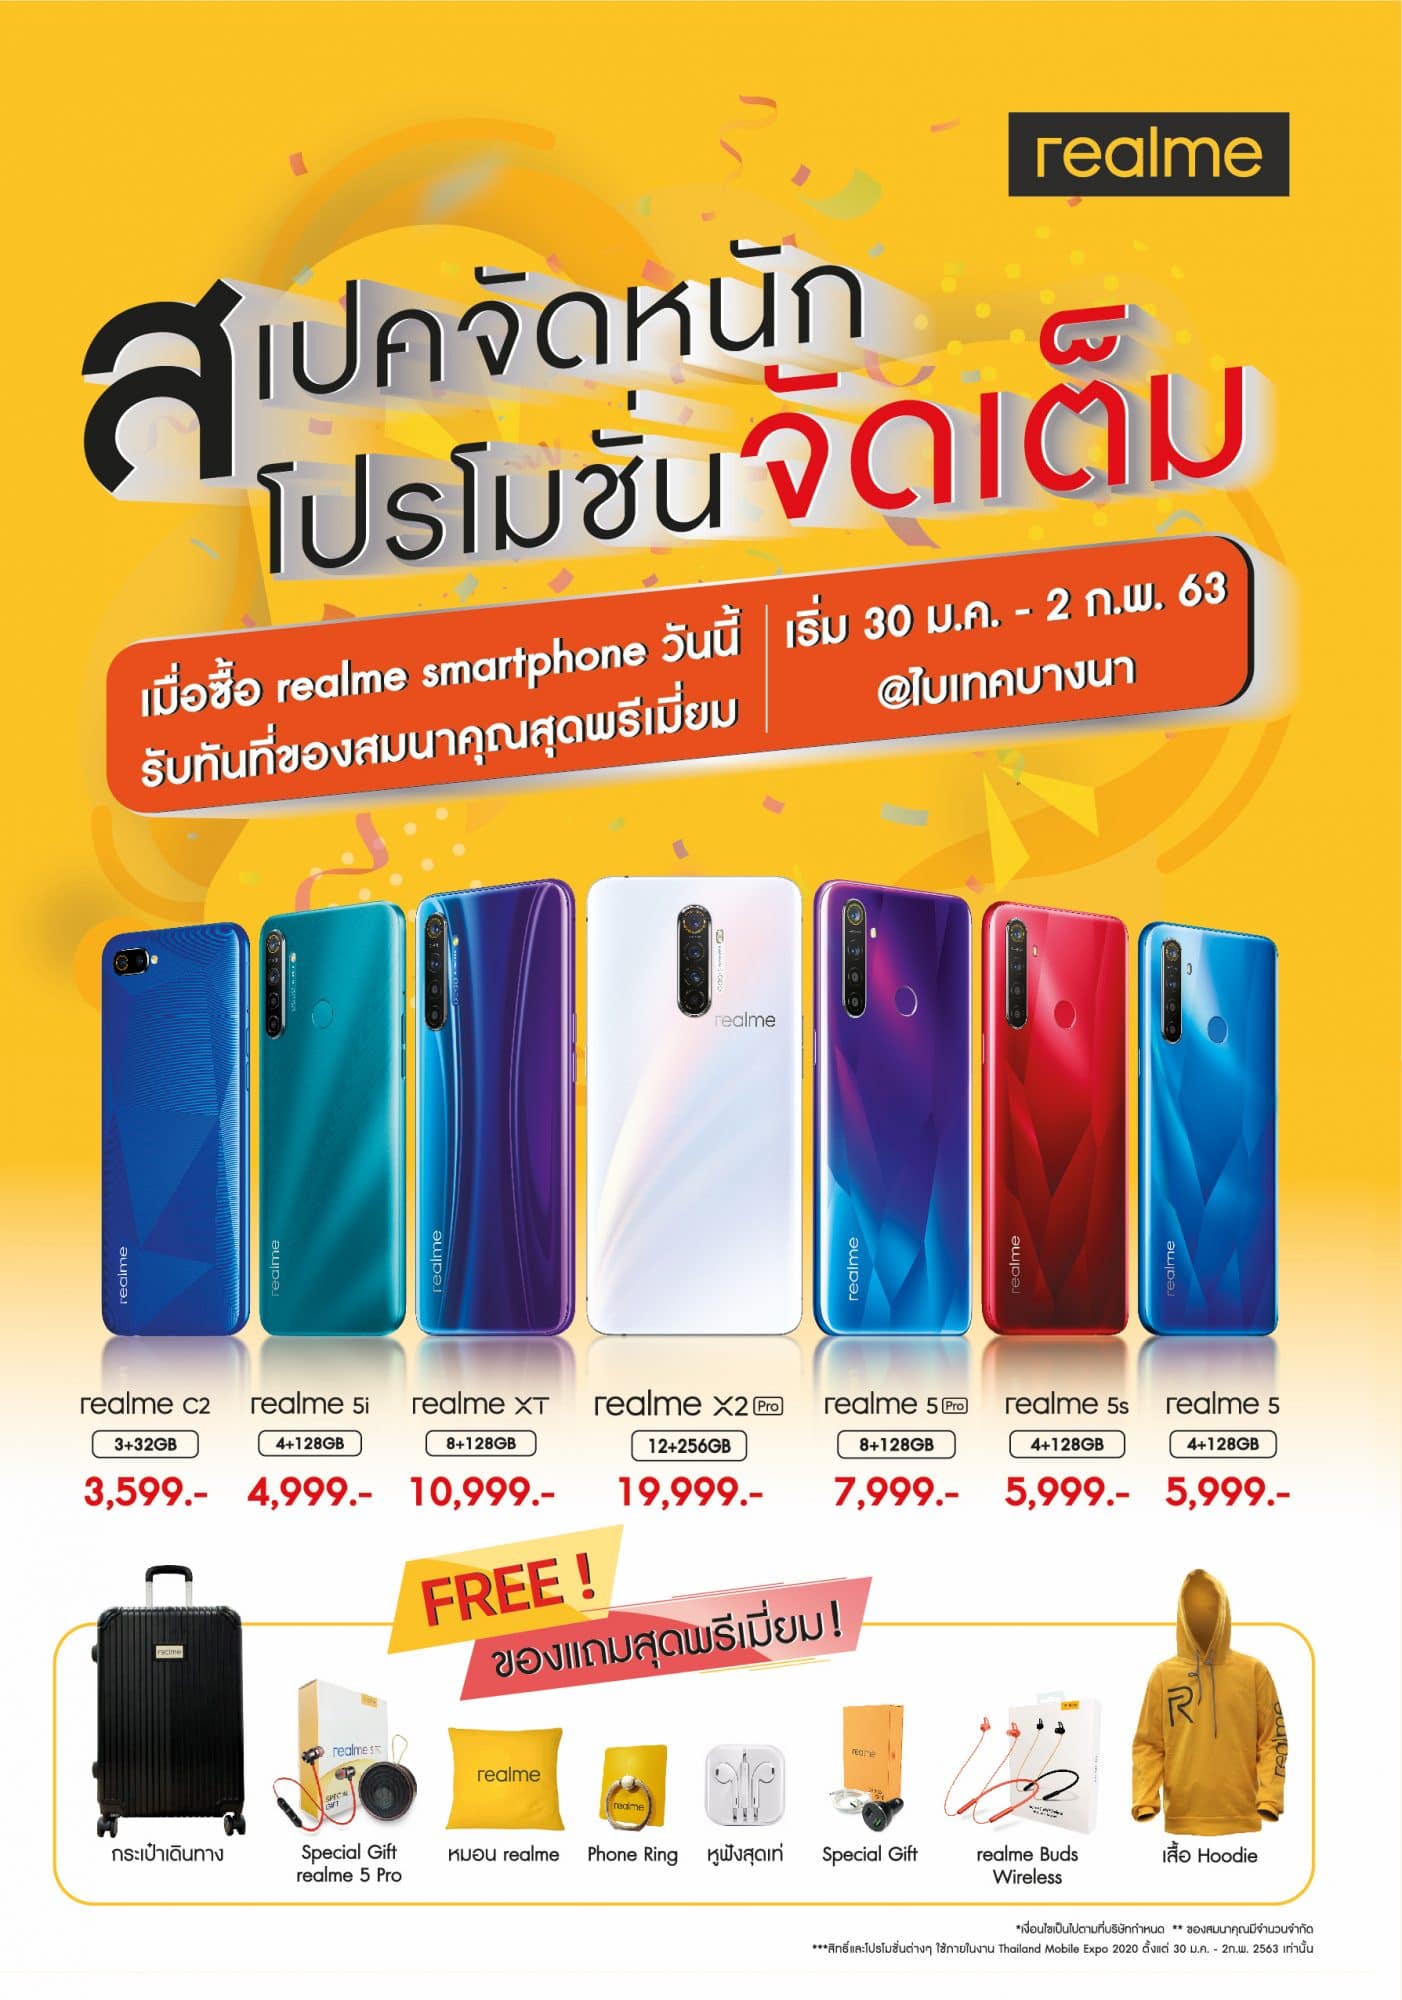 รวมโปรโมชัน realme ในงาน Thailand Mobile Expo 2020 7